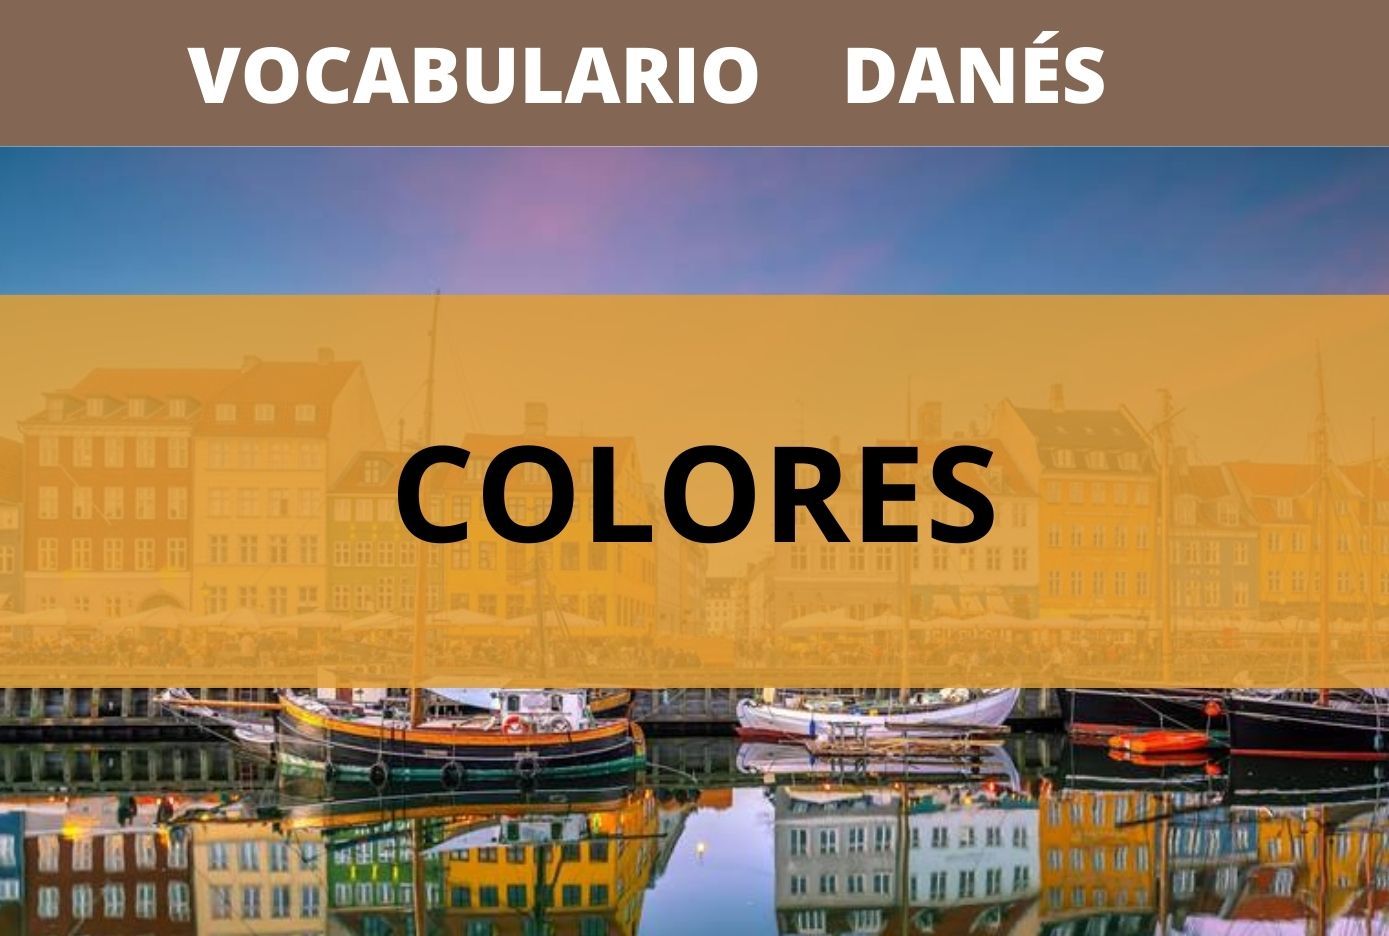 colores en danes vocabulario